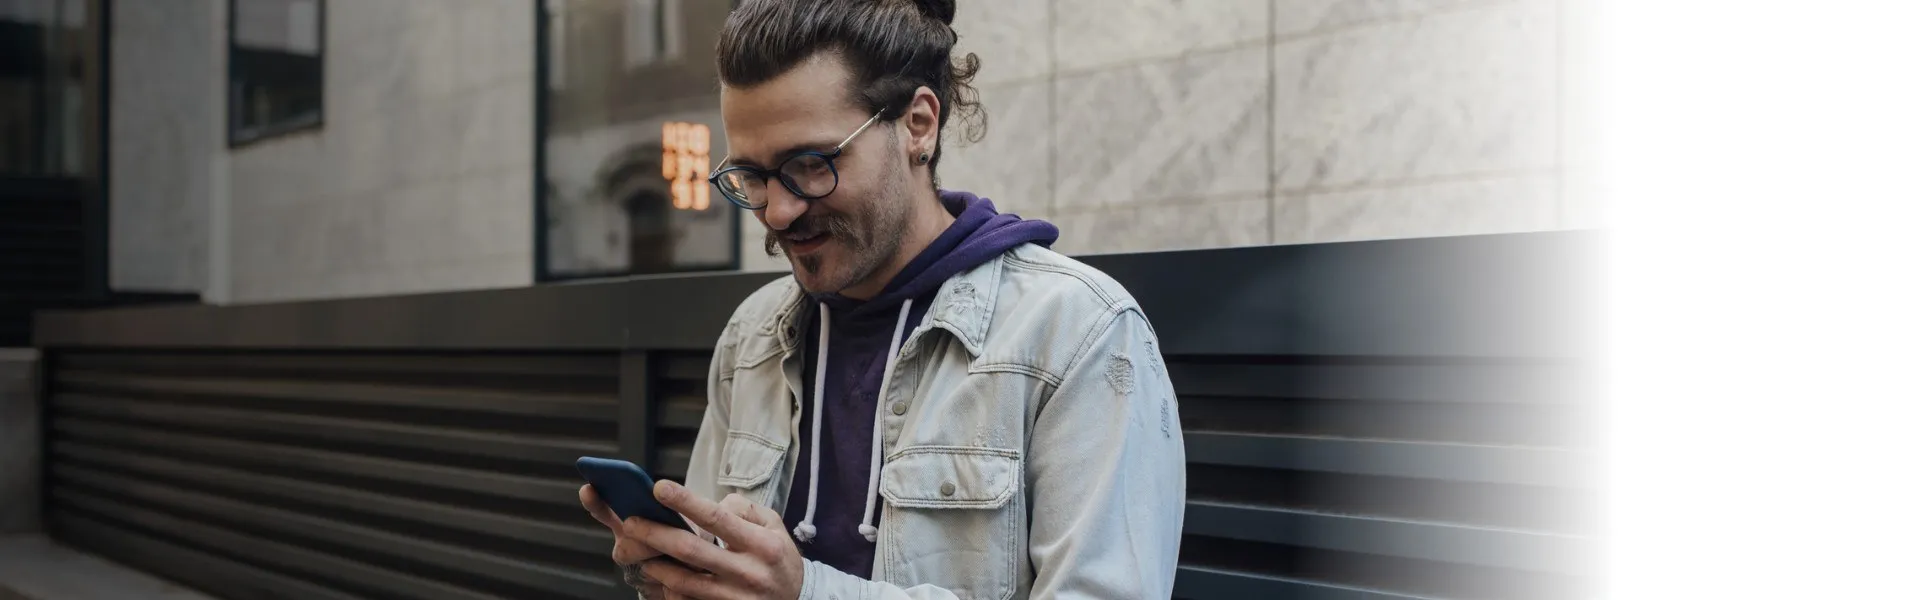 Homem branco sorrindo e enquanto olha a tela do celular.